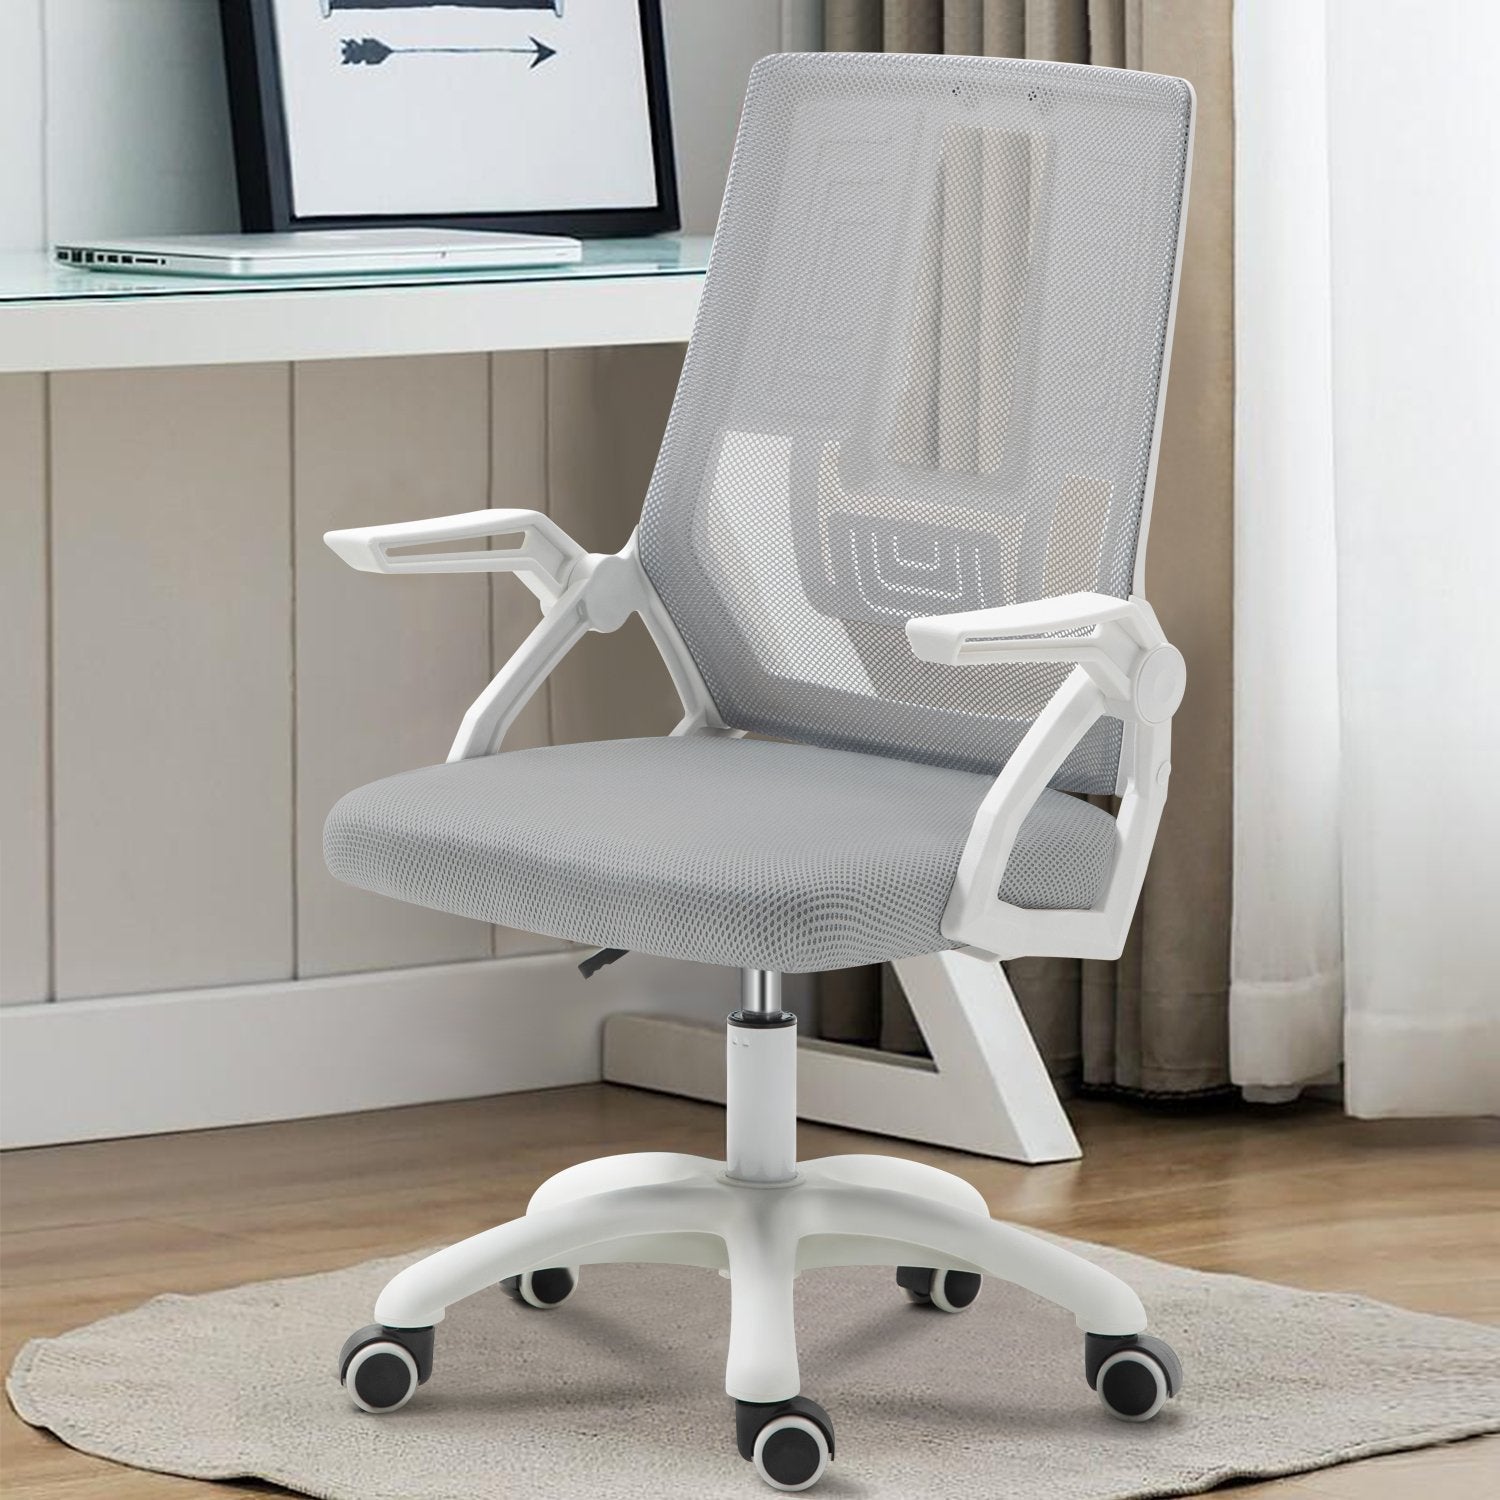 Office Chair, Ergonomic Desk Chair, Lumbar Support, Adjustable